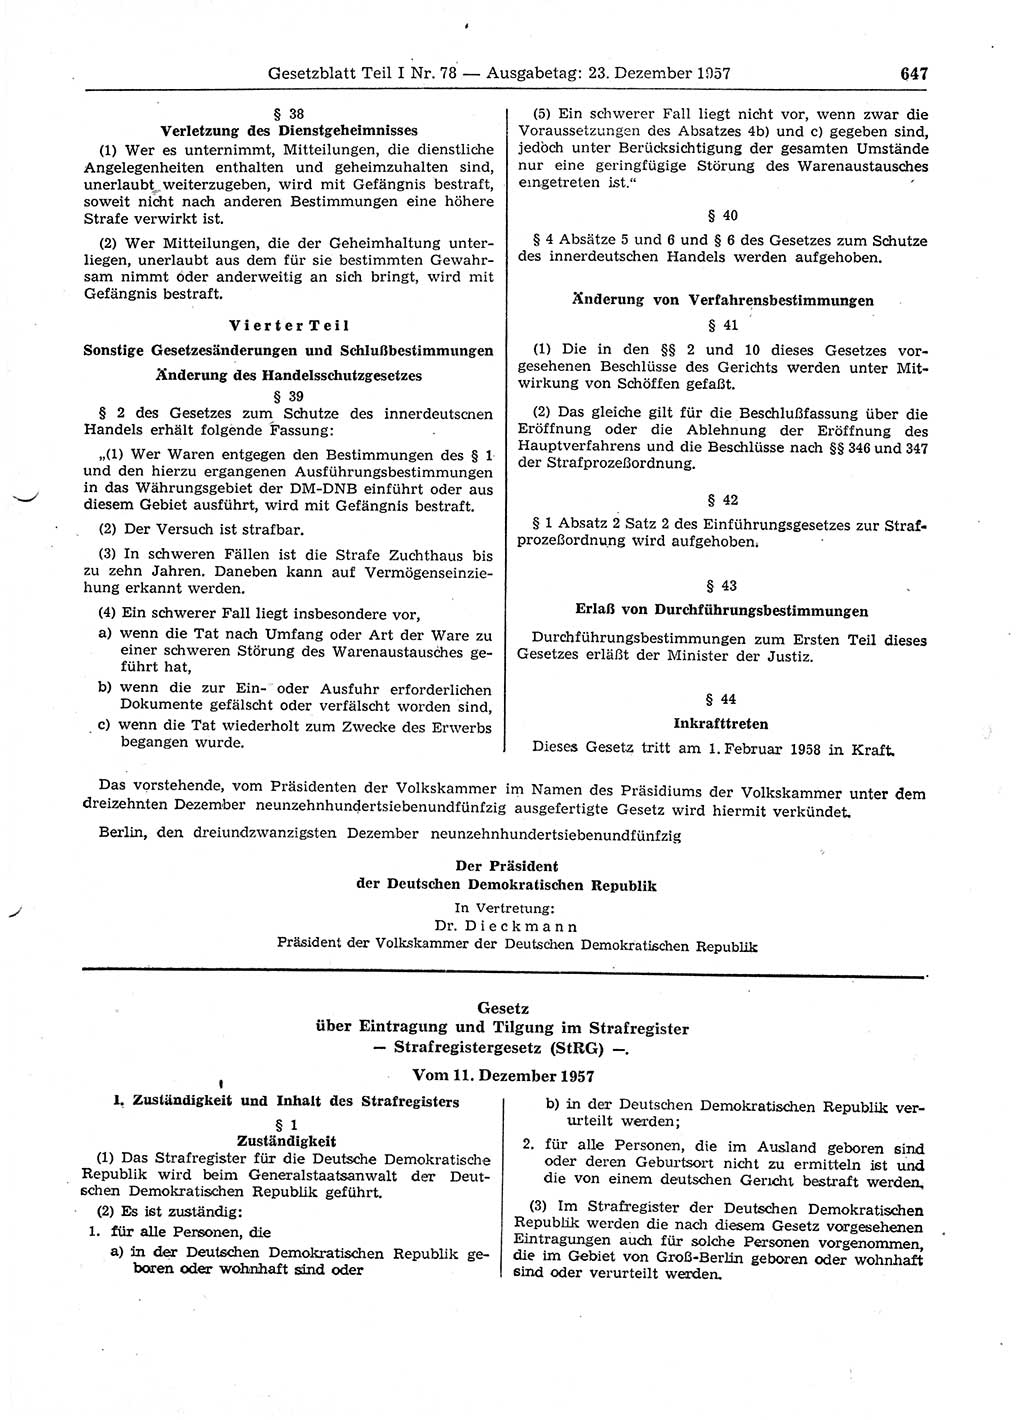 Gesetzblatt (GBl.) der Deutschen Demokratischen Republik (DDR) Teil Ⅰ 1957, Seite 647 (GBl. DDR Ⅰ 1957, S. 647)